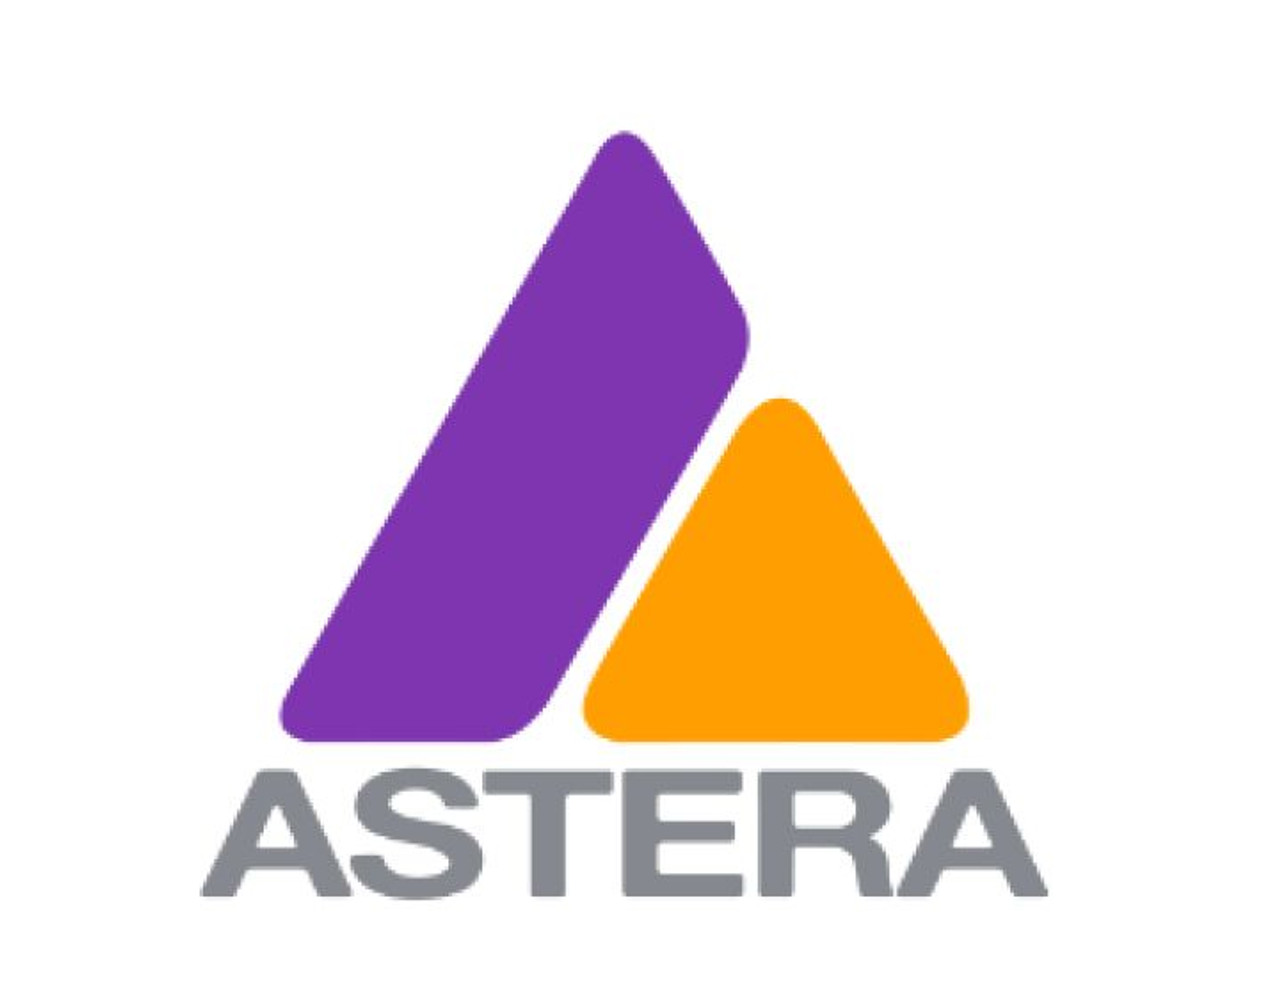 Astera AX2-50 LRC AX2 Case Fits Four Fixtures (ROCCOs AX2-50 LRC)